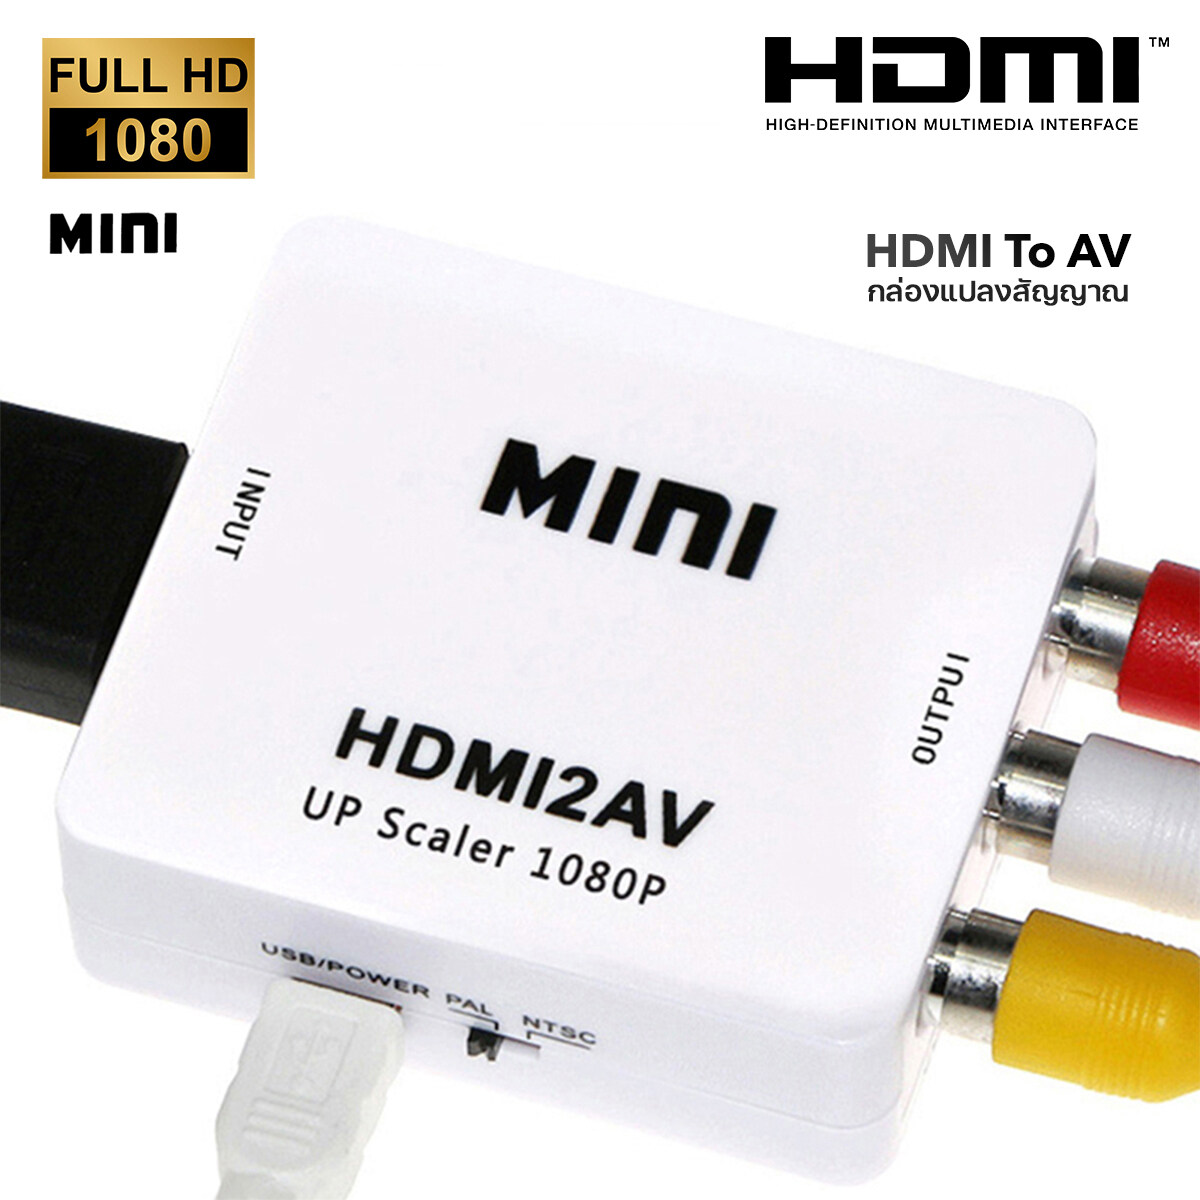 HDMI to AV Converter (1080P) แปลงสัญญาณภาพและเสียงจาก HDMI เป็น AV#T4